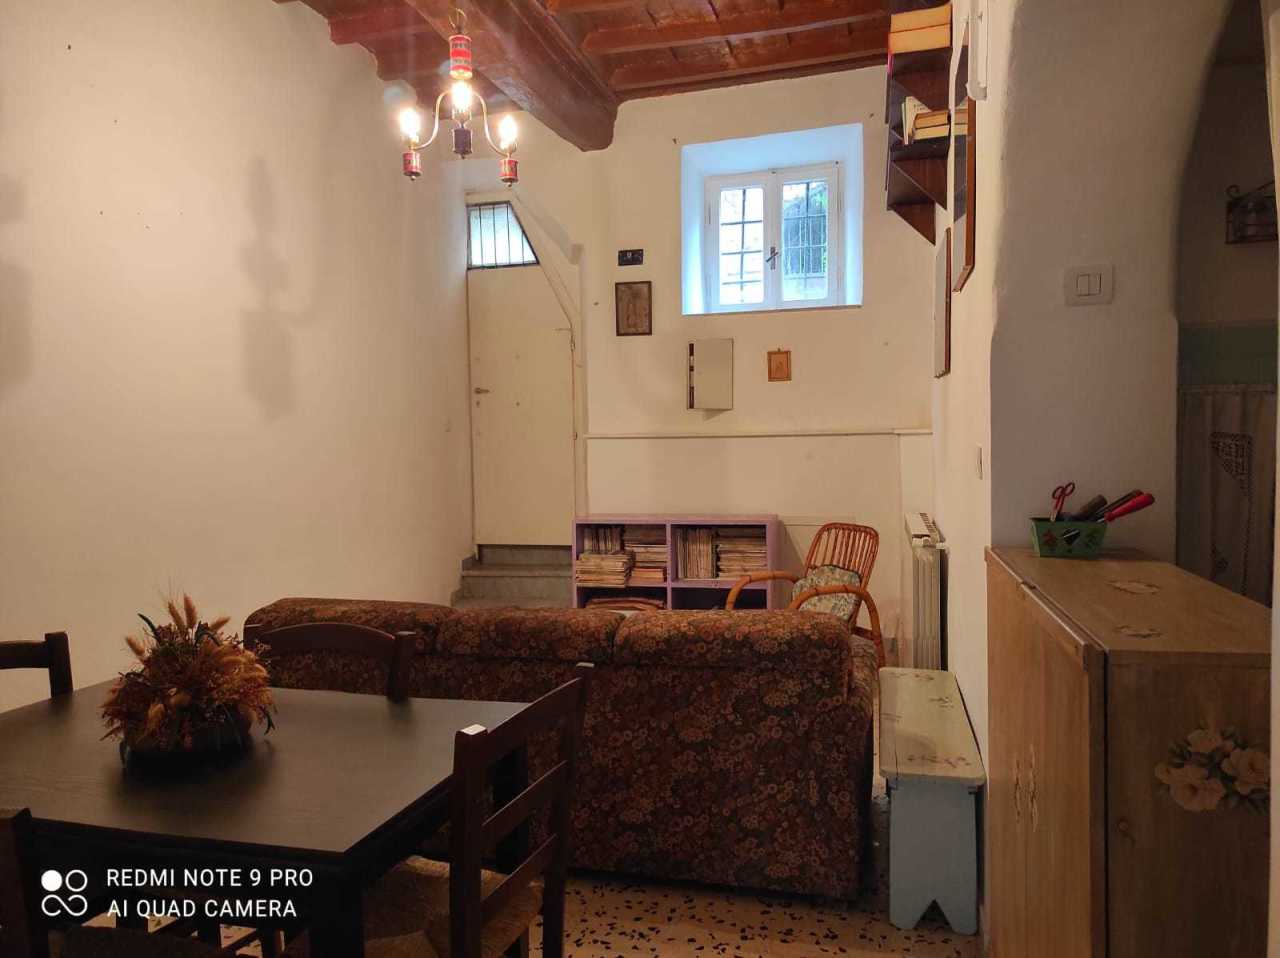 Appartamento in vendita a Genazzano, 3 locali, prezzo € 33.000 | CambioCasa.it